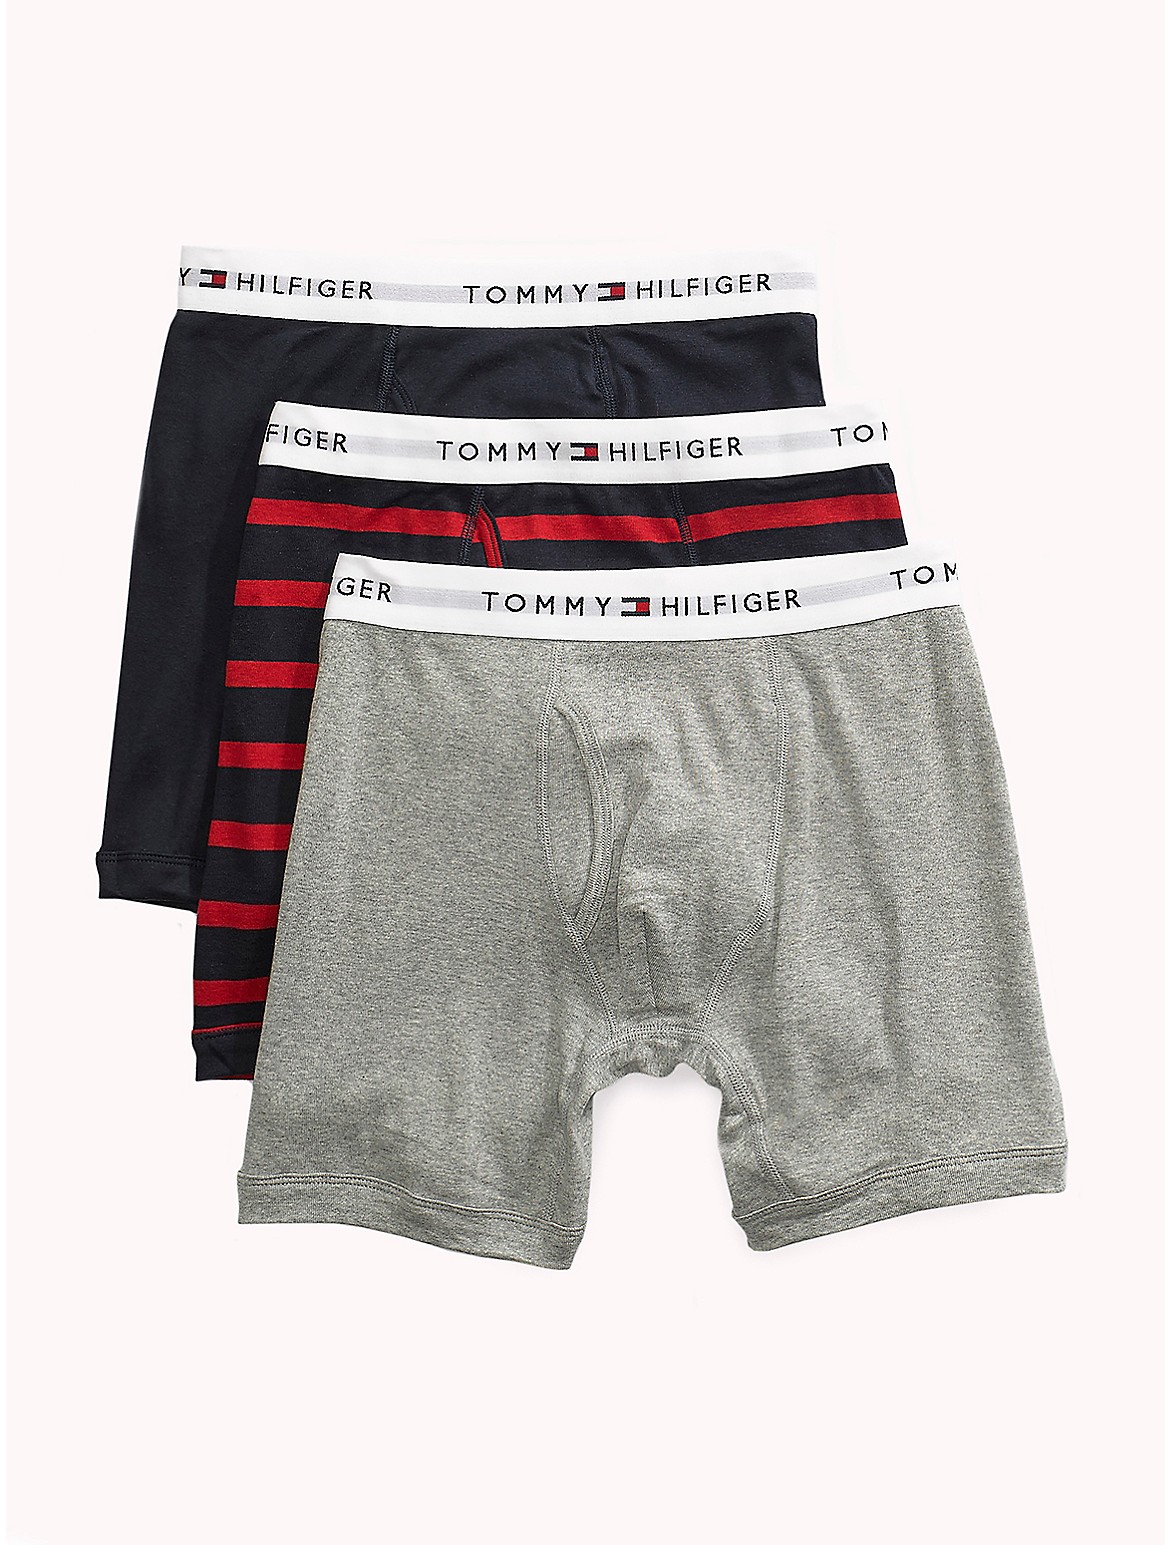 Tommy Hilfiger Men's Cotton Classics Boxer Brief 3-Pack - Multi - XL